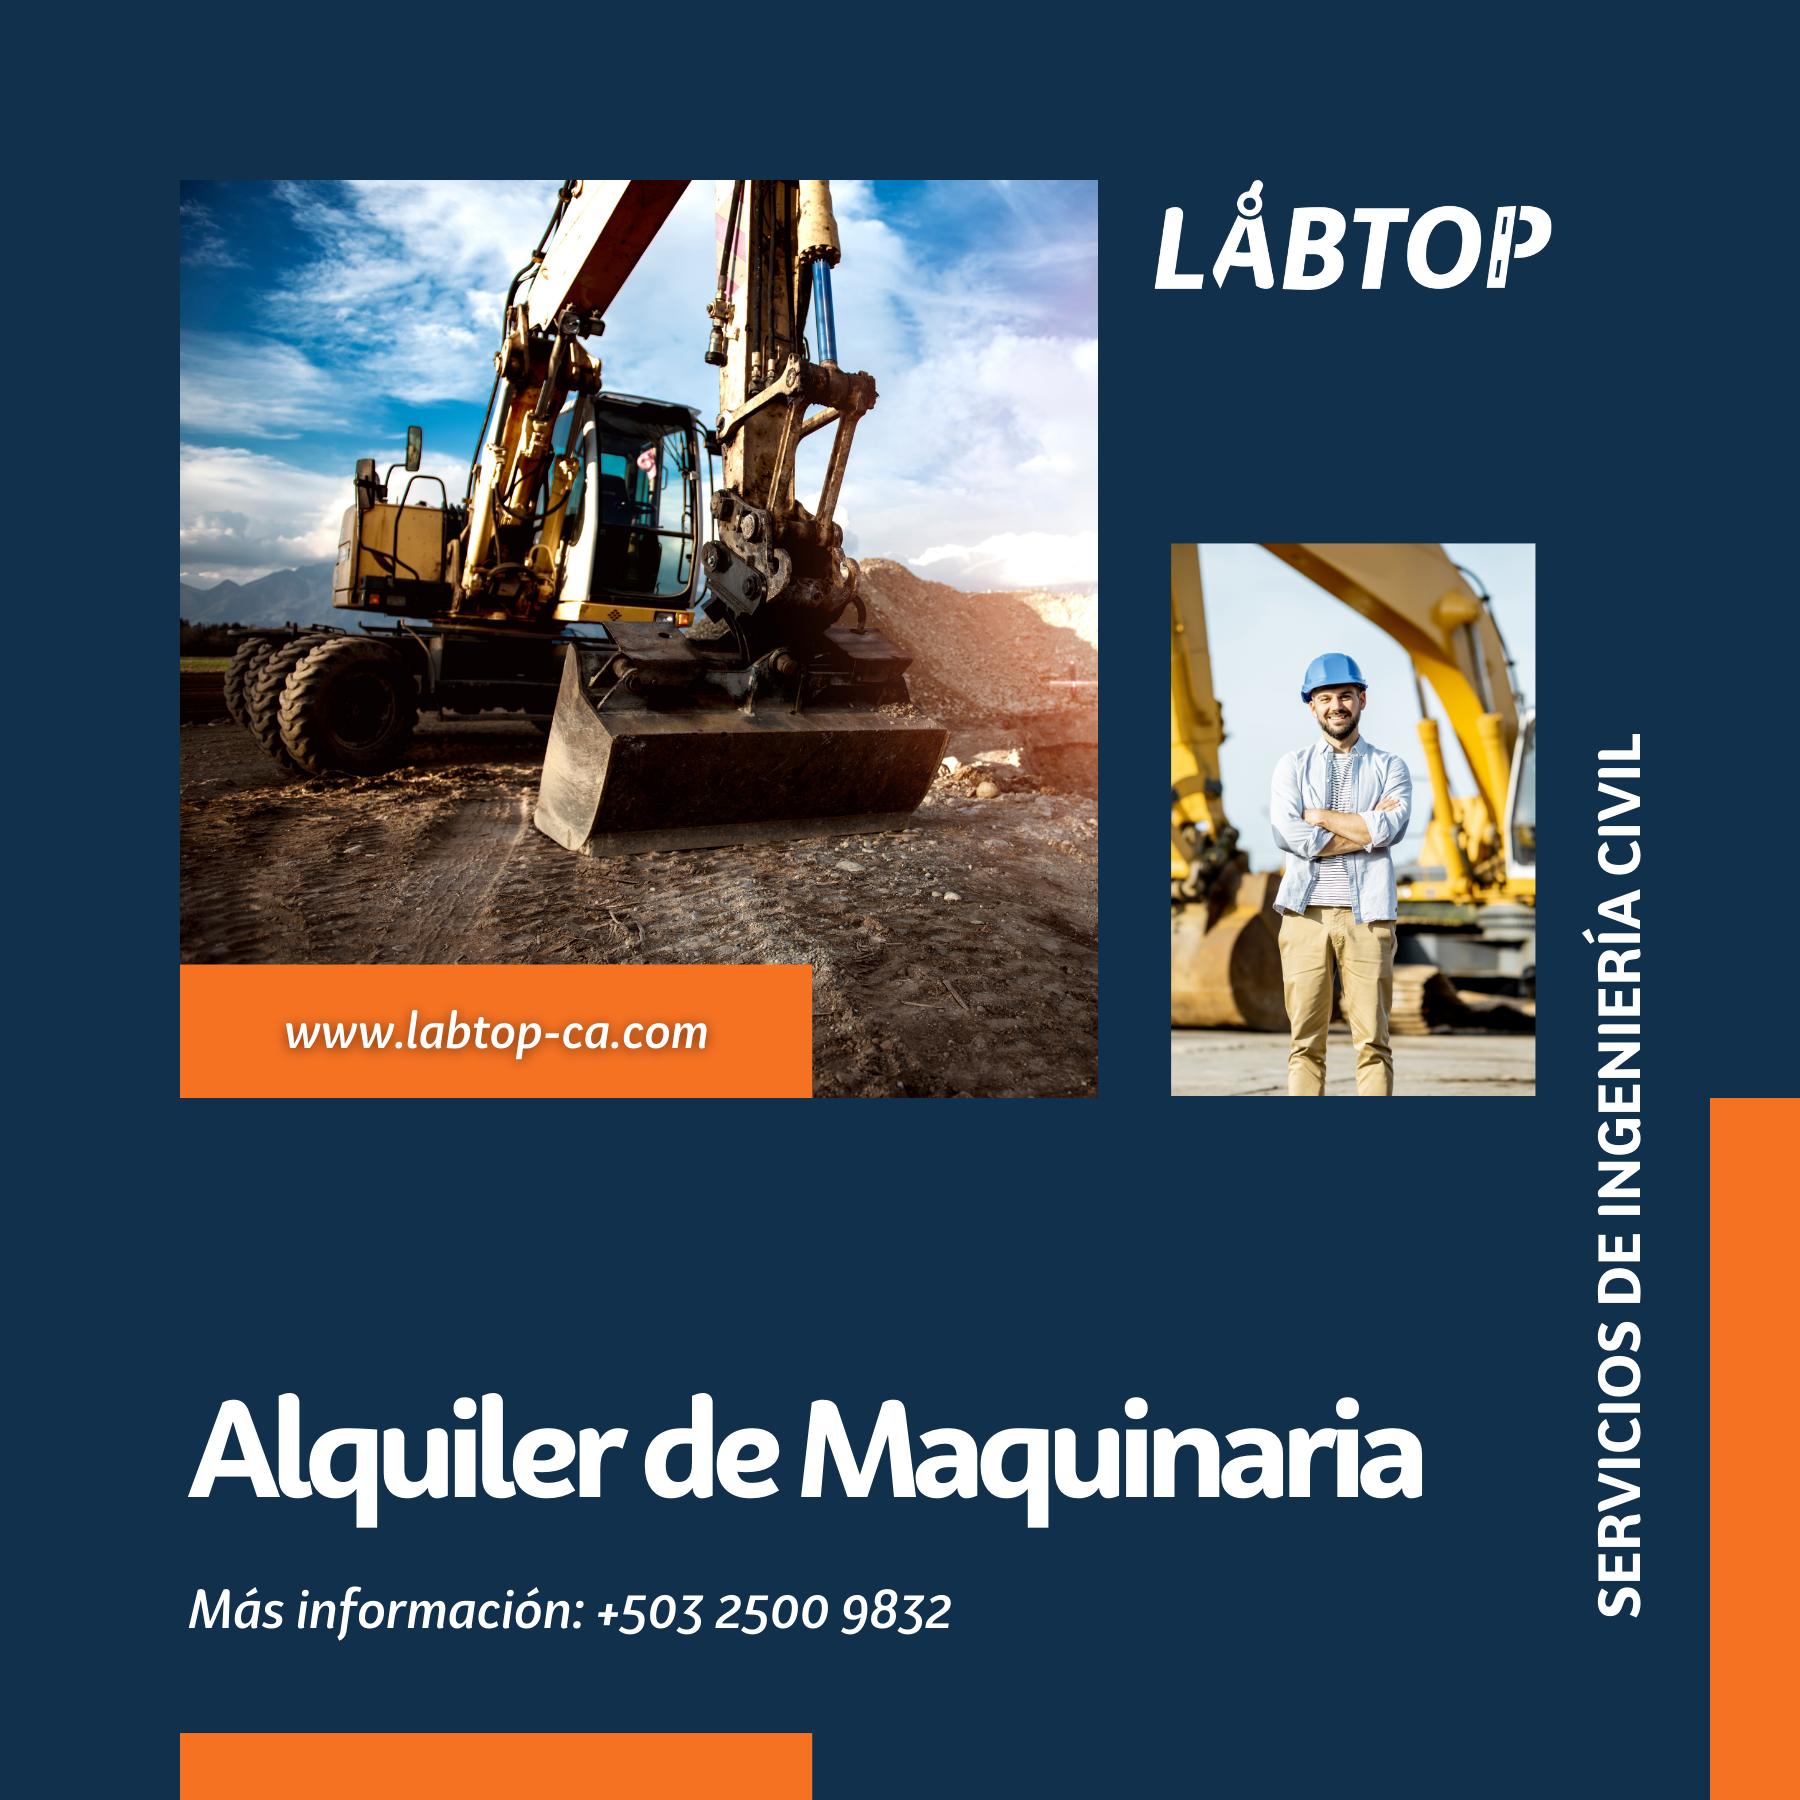 Alquiler de maquinaria - LABTOP, El manual del constructor